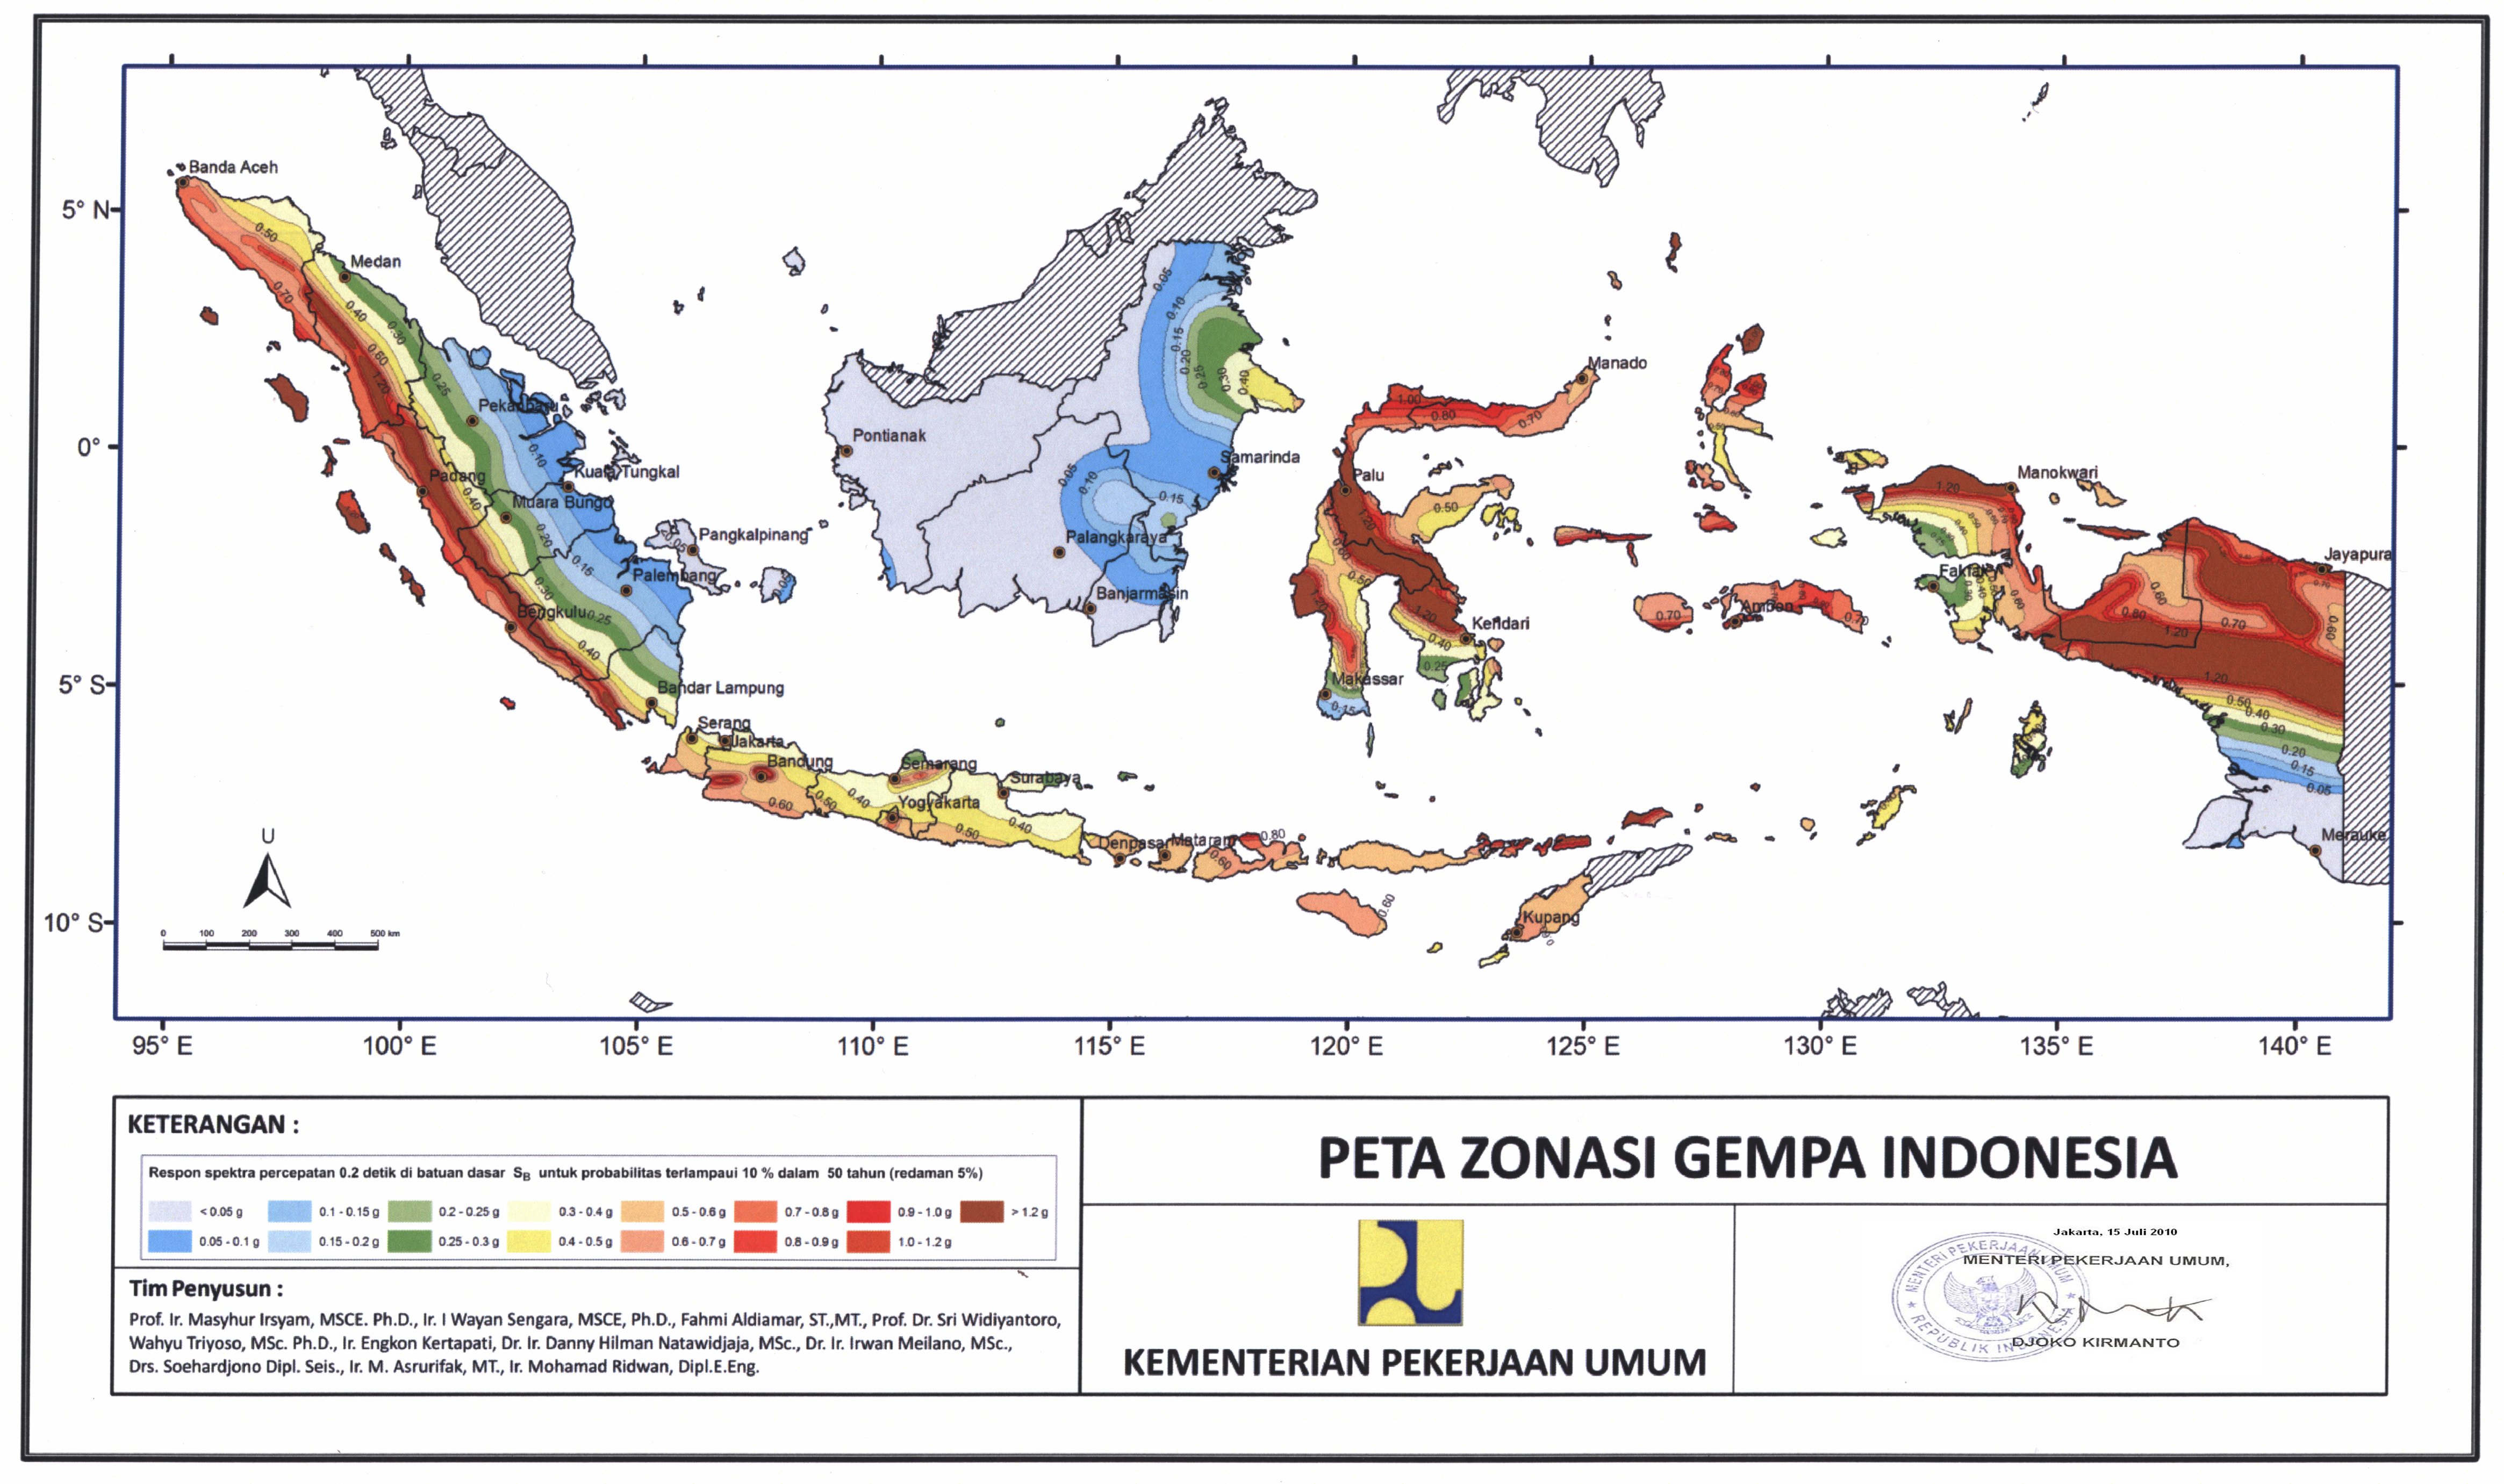 Peta Zona Gempa Indonesia (Indonesia Earthquake Zone Map 